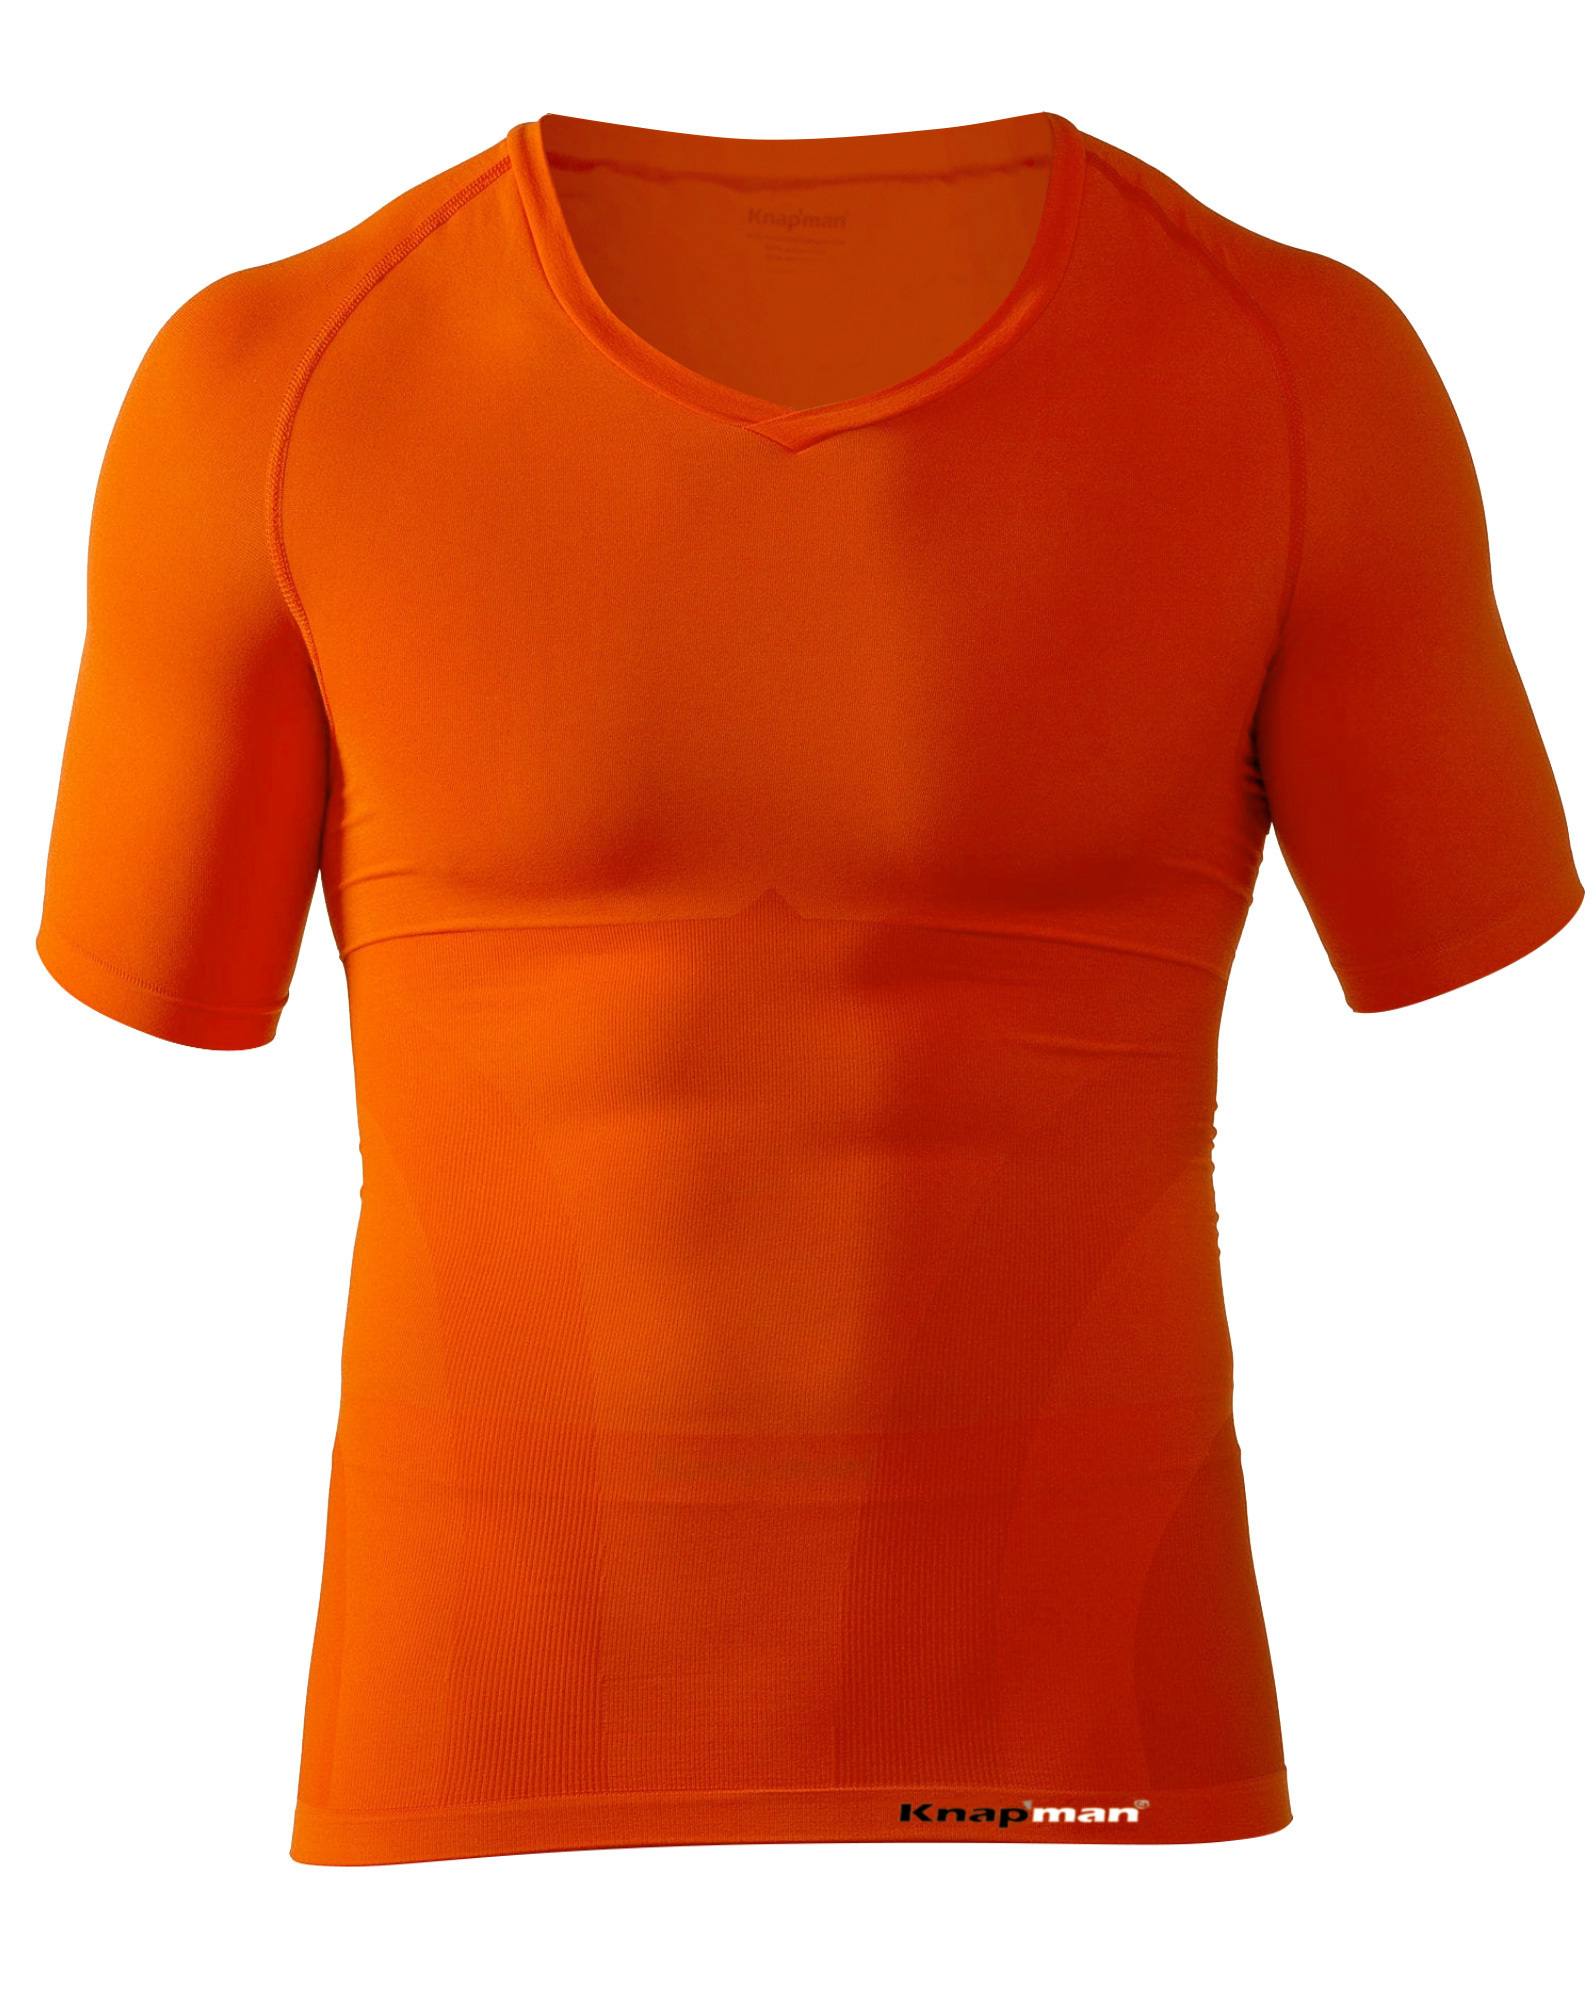 Knap'man Compression Shirt UltraThin V-Neck Orange